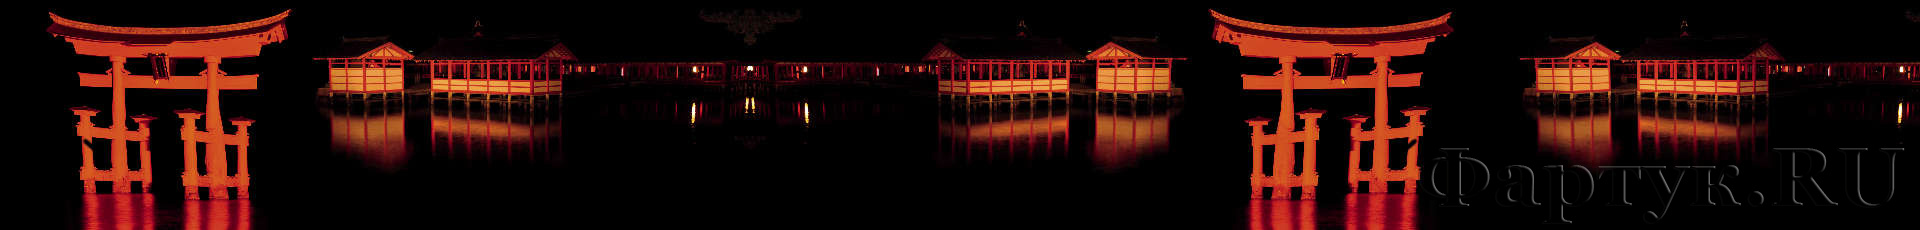 Ночная пагода